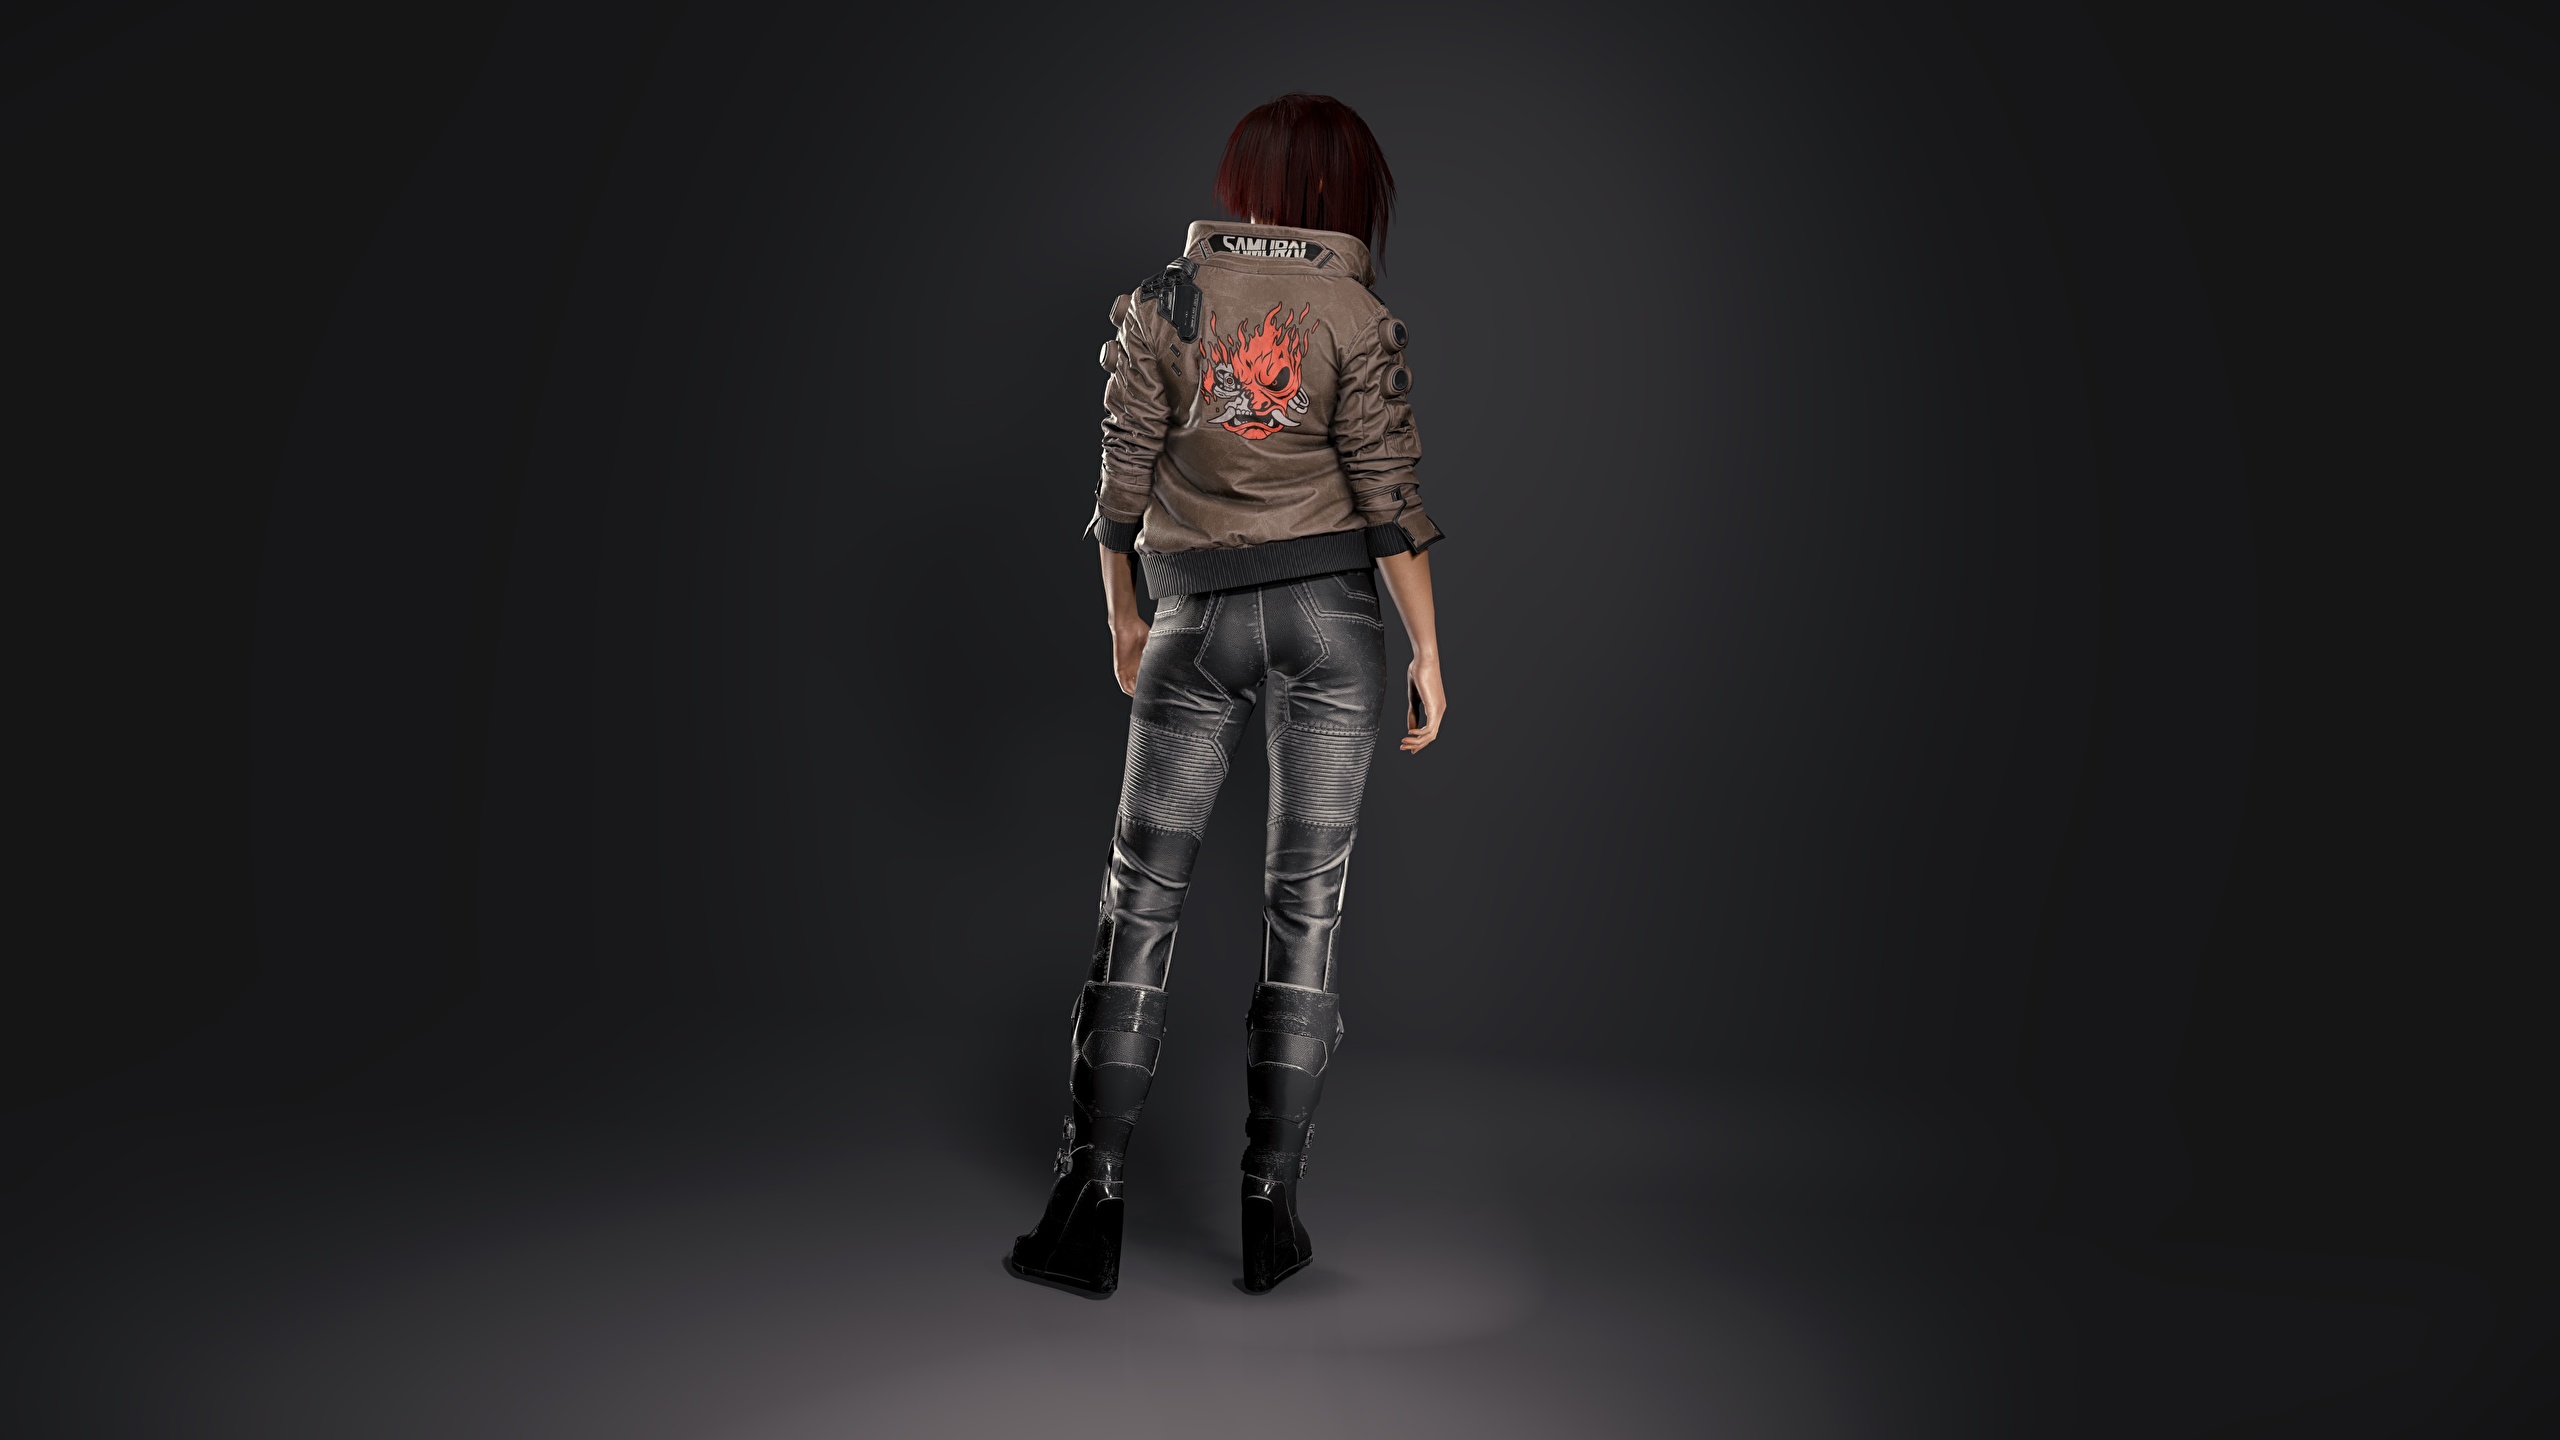 Фото Cyberpunk 2077 3д куртки молодые женщины Игры вид сзади 2560x1440 киберпанк 2077 куртке Куртка куртках девушка Девушки 3D Графика молодая женщина компьютерная игра Сзади